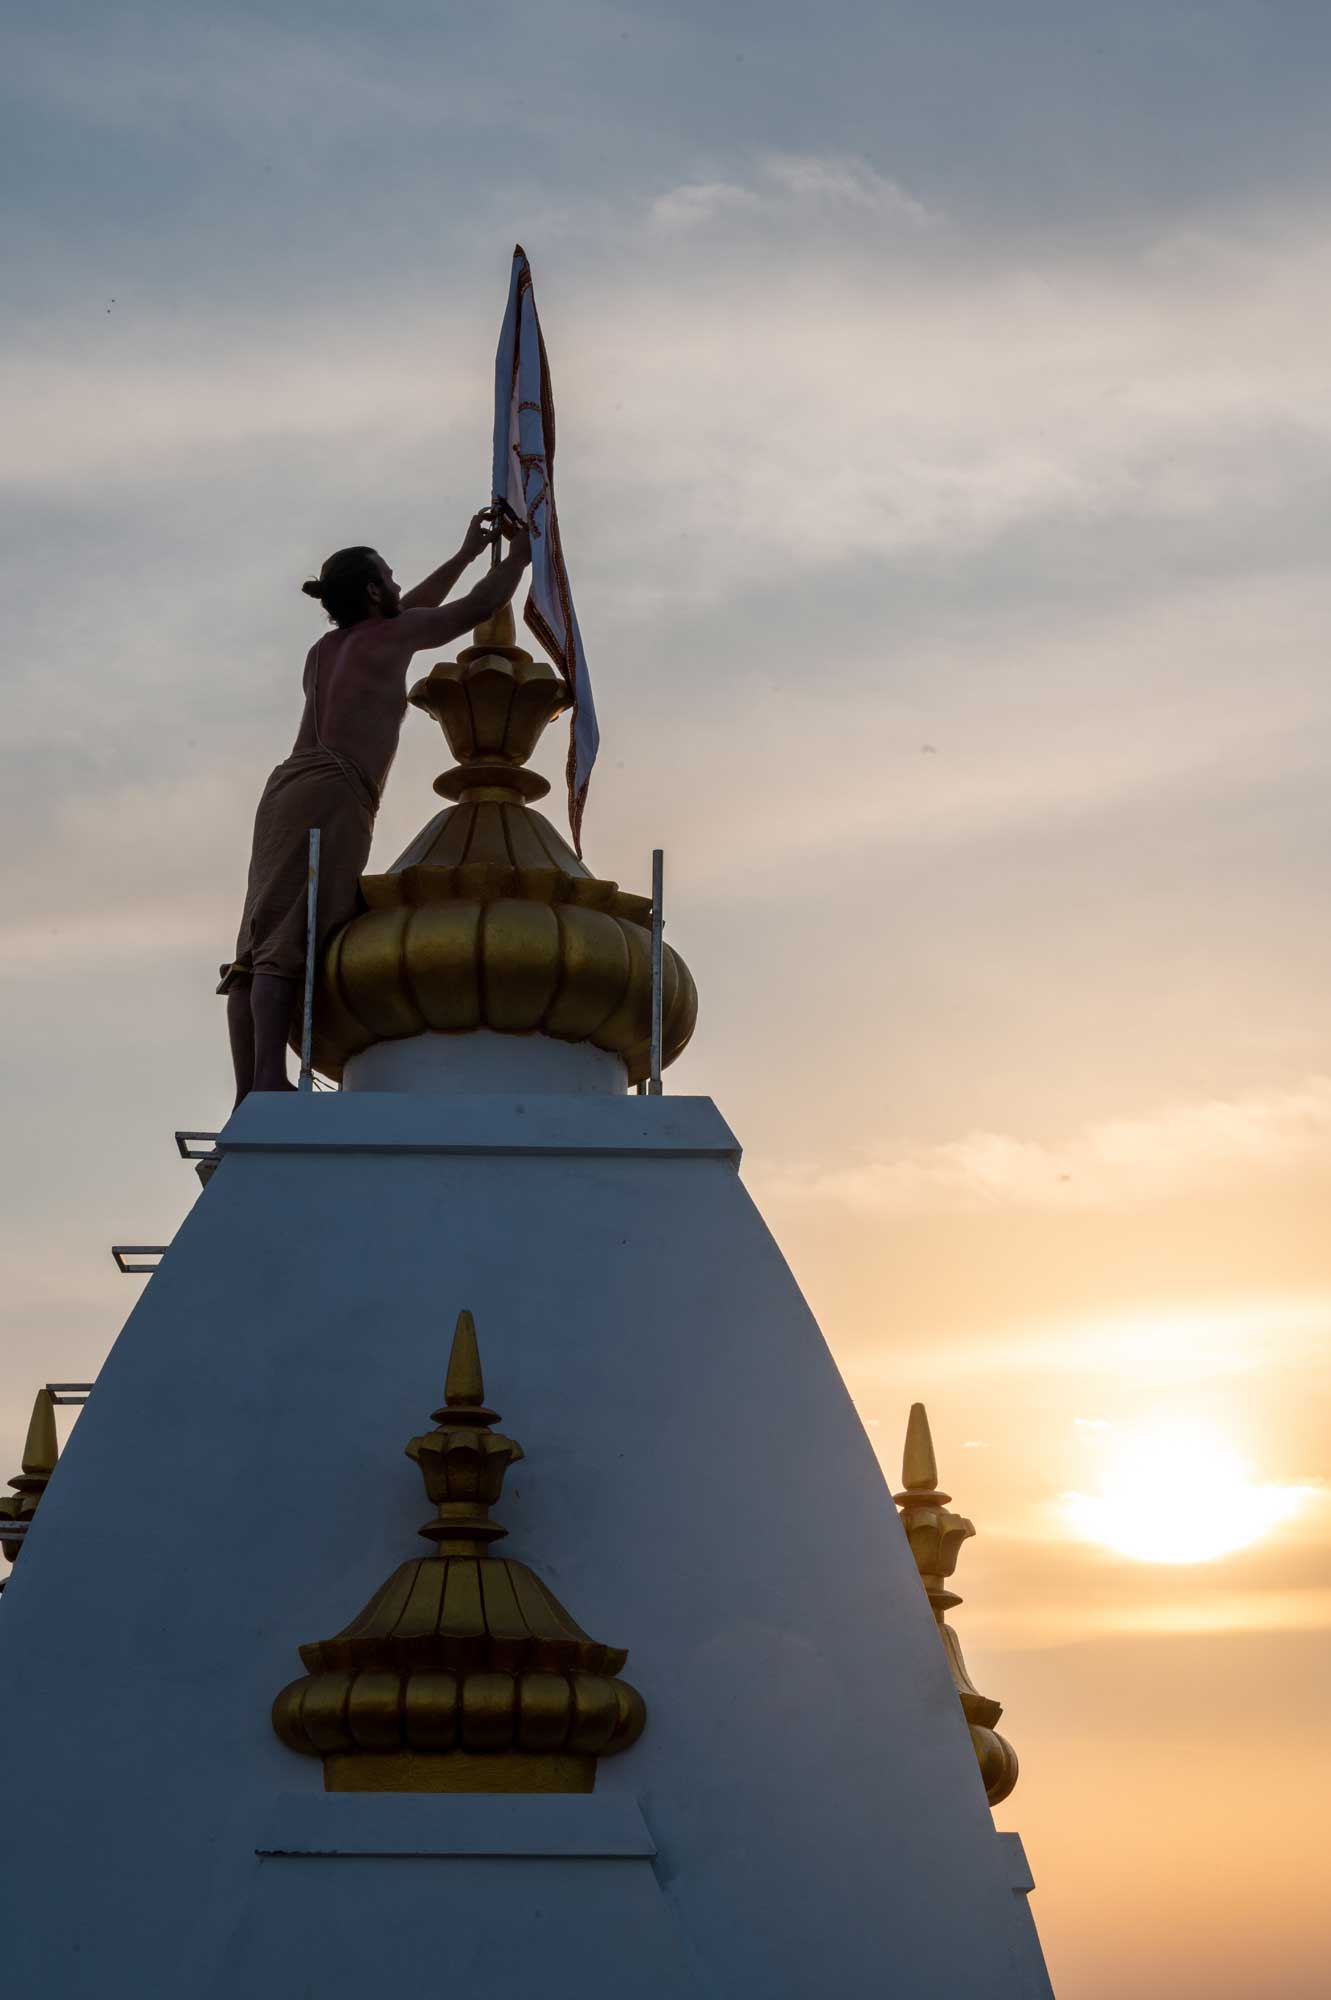 Rupanuga Bhajan Ashram Flag Hoisting on Temple Dome